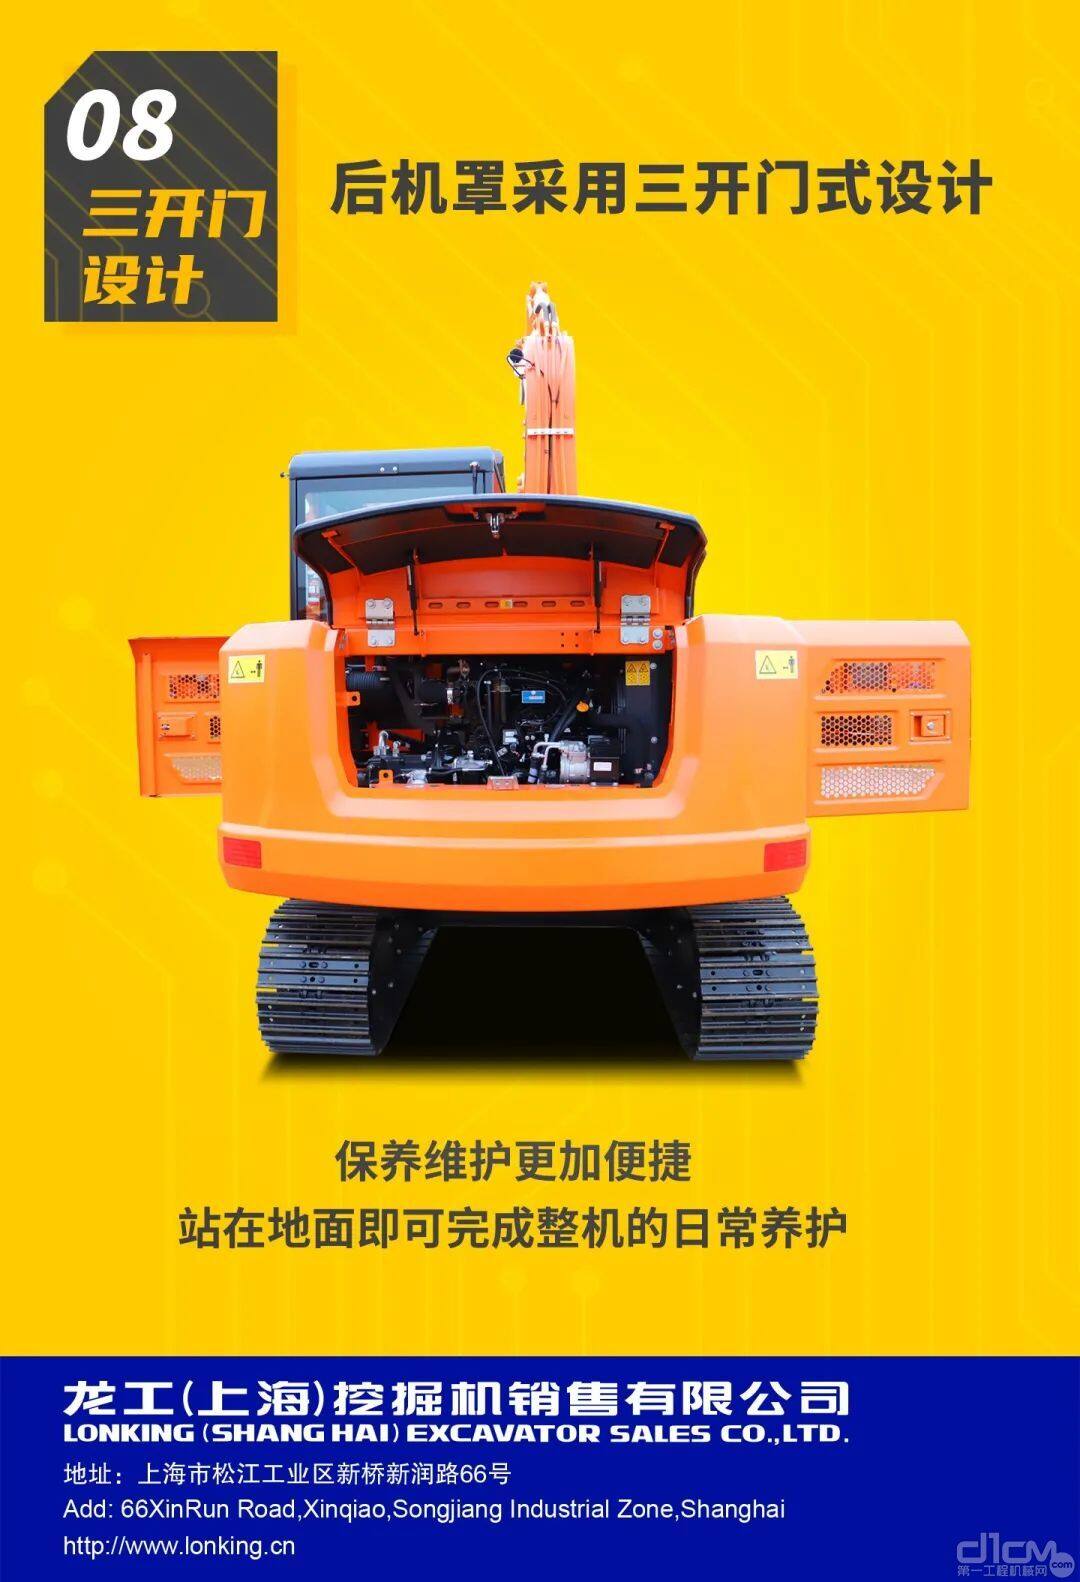 龙工效率王PRO系列LG6075(洋马动力)履带式液压挖掘机